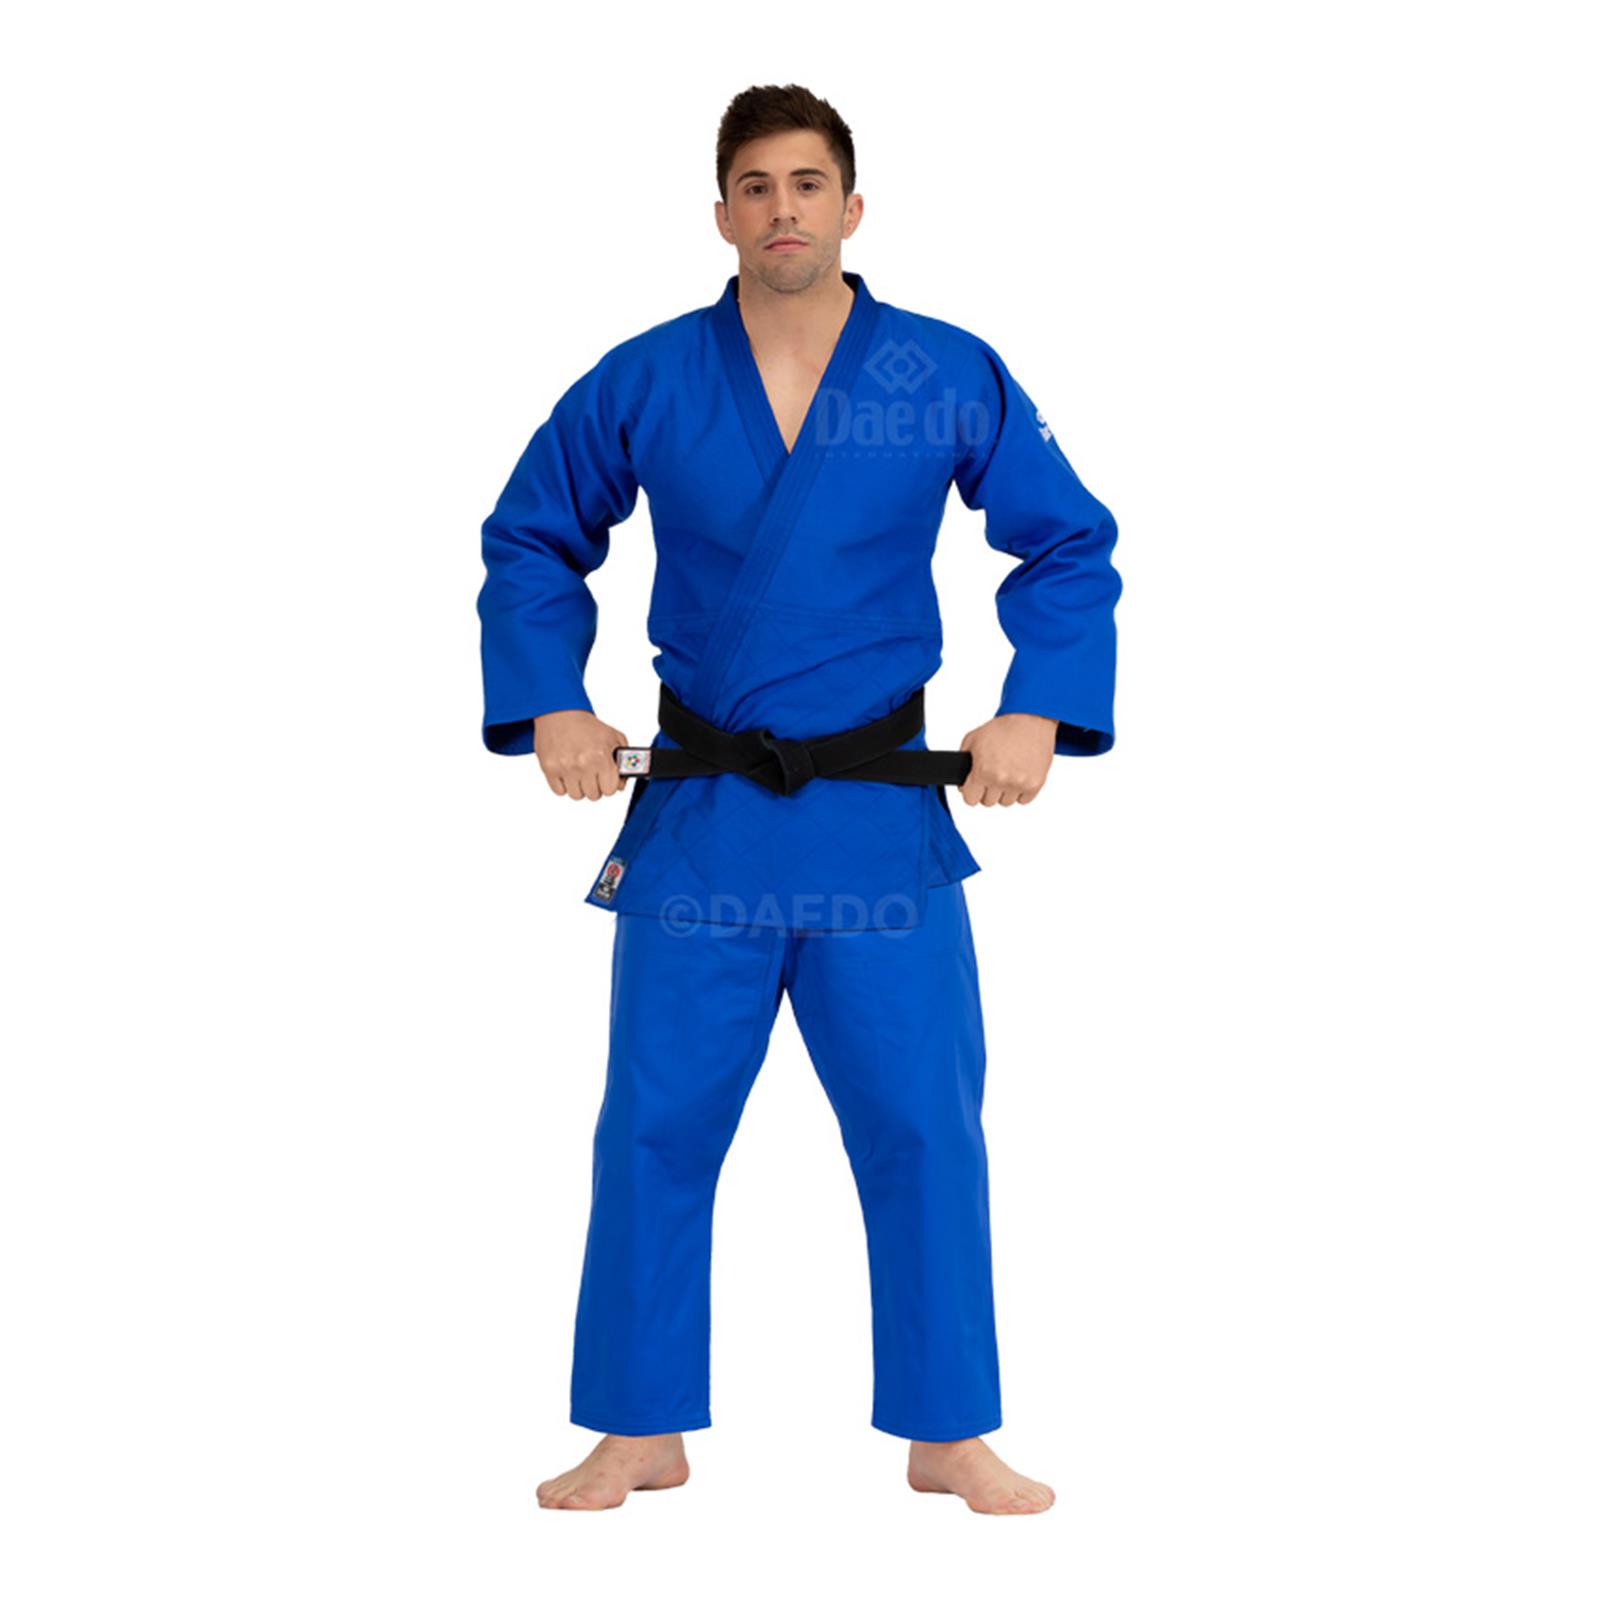 Dae Do Judogi da Competizione Elite az (3° - 160cm - BLU)